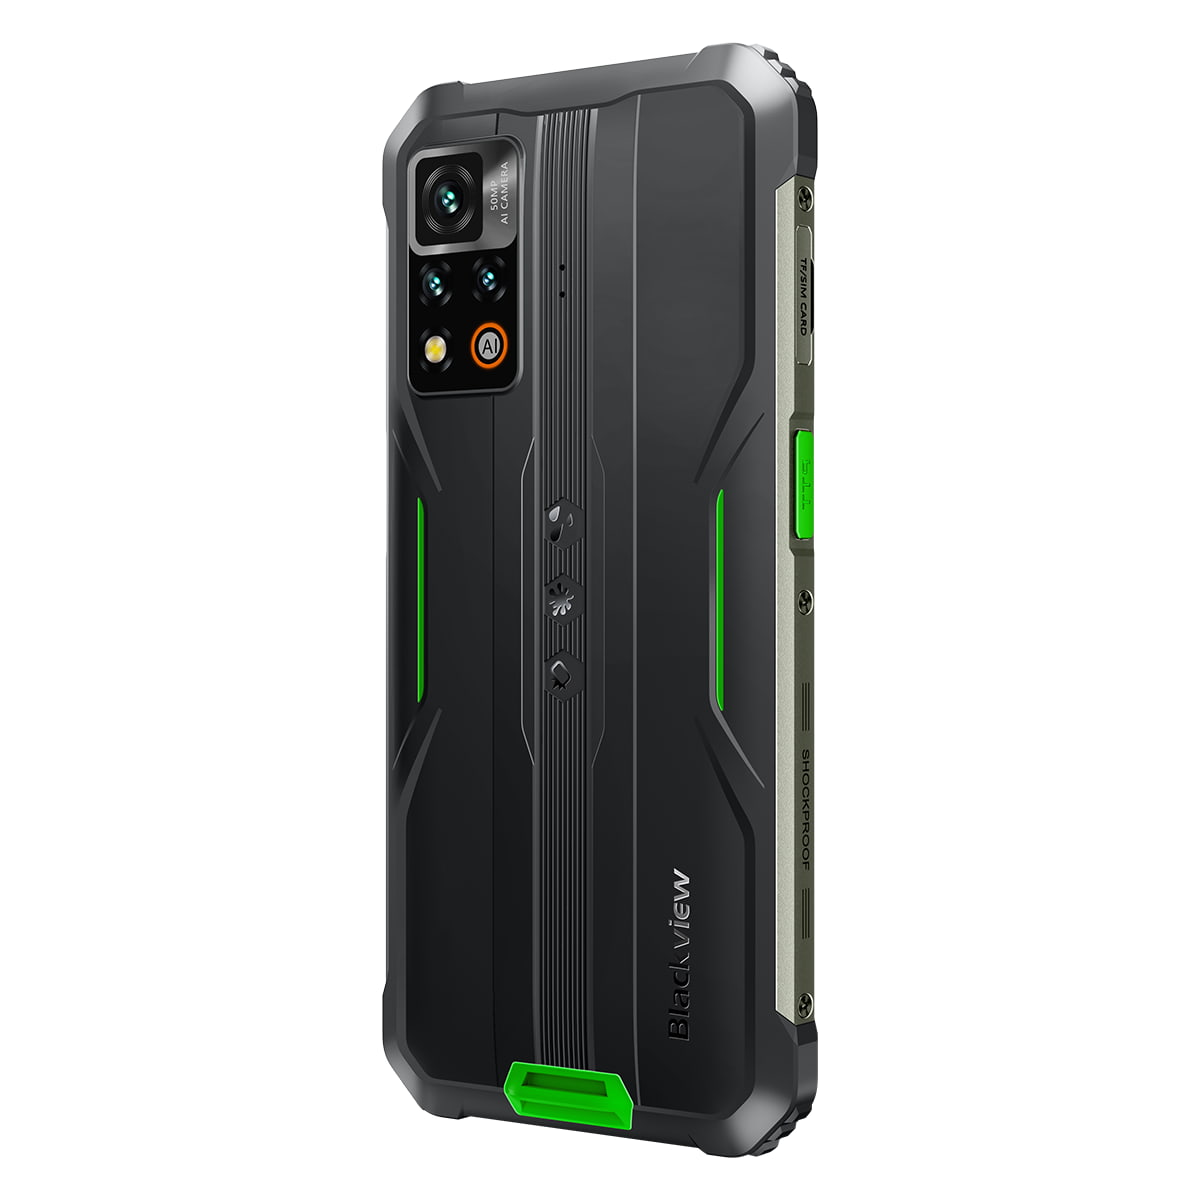 Blackview BV9200, Smartphone étanche - Nouveauté 2023 - Android 12, Photo 50 Mpx, Mémoire de 256Go, 8Go de RAM, NFC, Charge Sans Fil